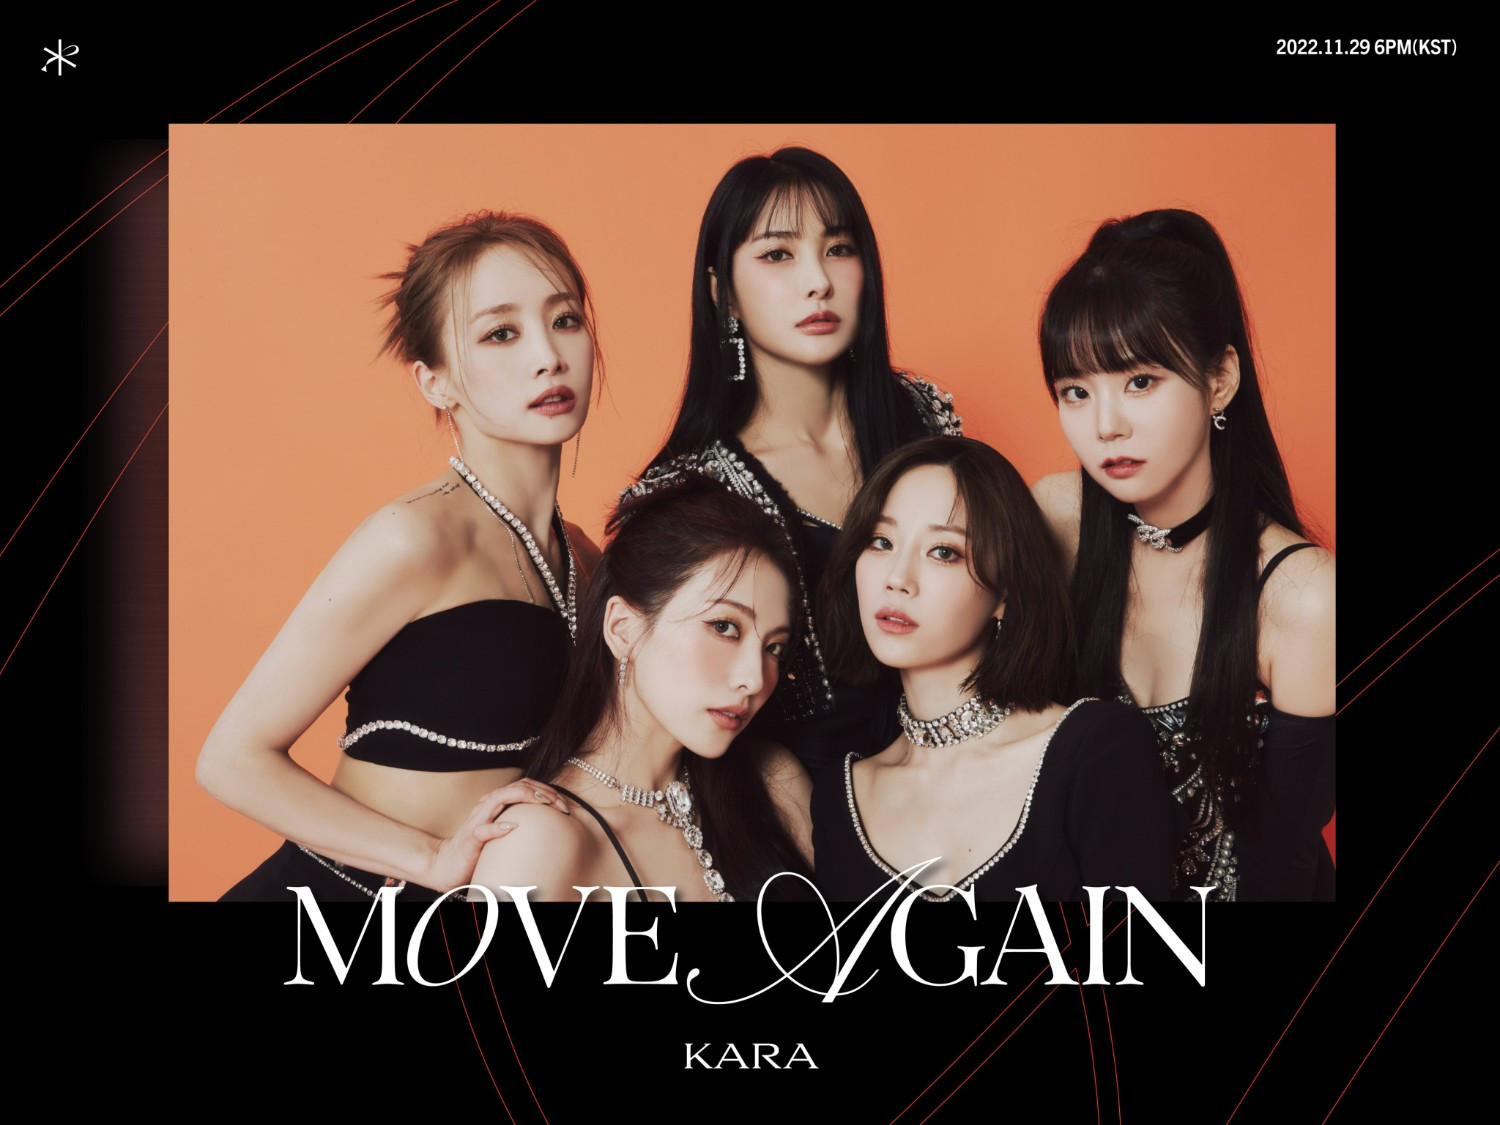 Setelah Hiatus Tujuh Tahun, Kara Comeback Dengan Ep "Move Again"